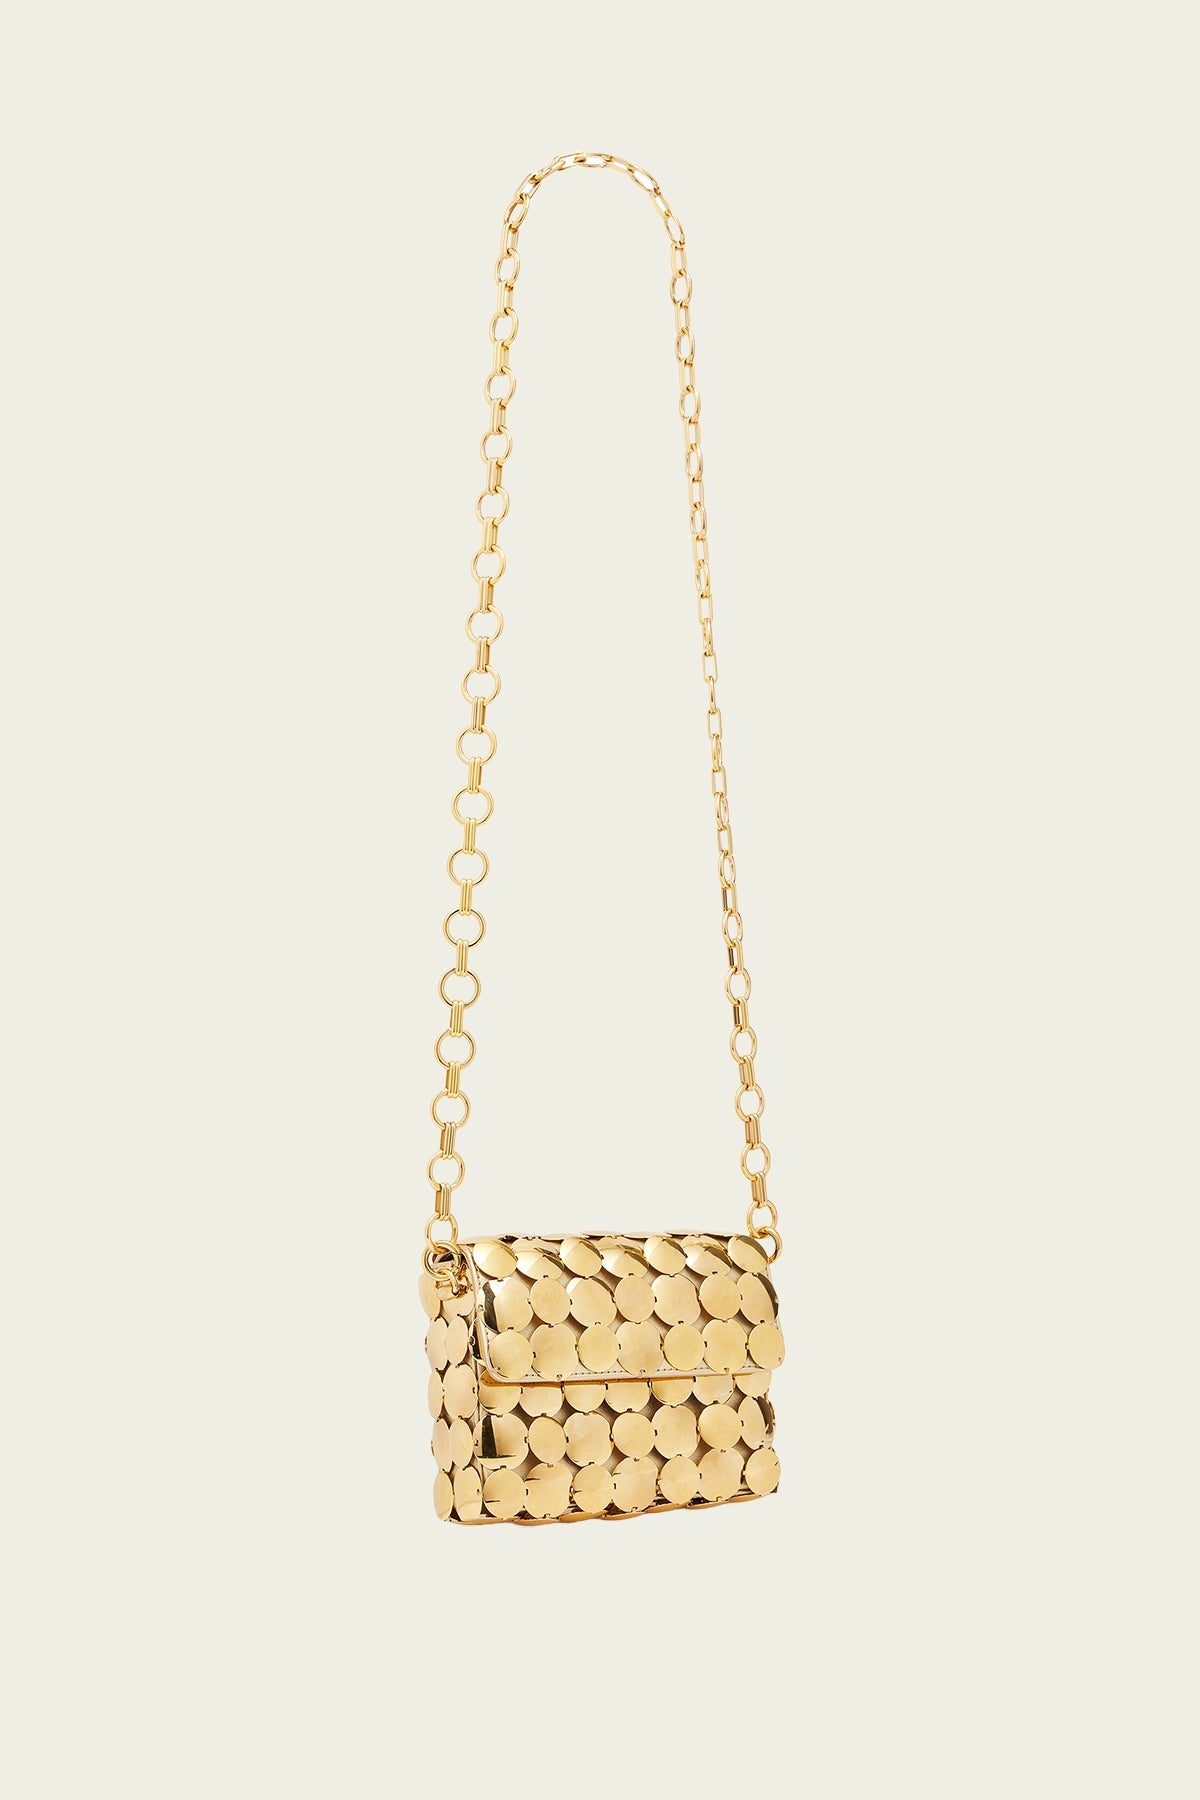 Mirror Embellished Shoulder Bag in Gold - shop-olivia.com